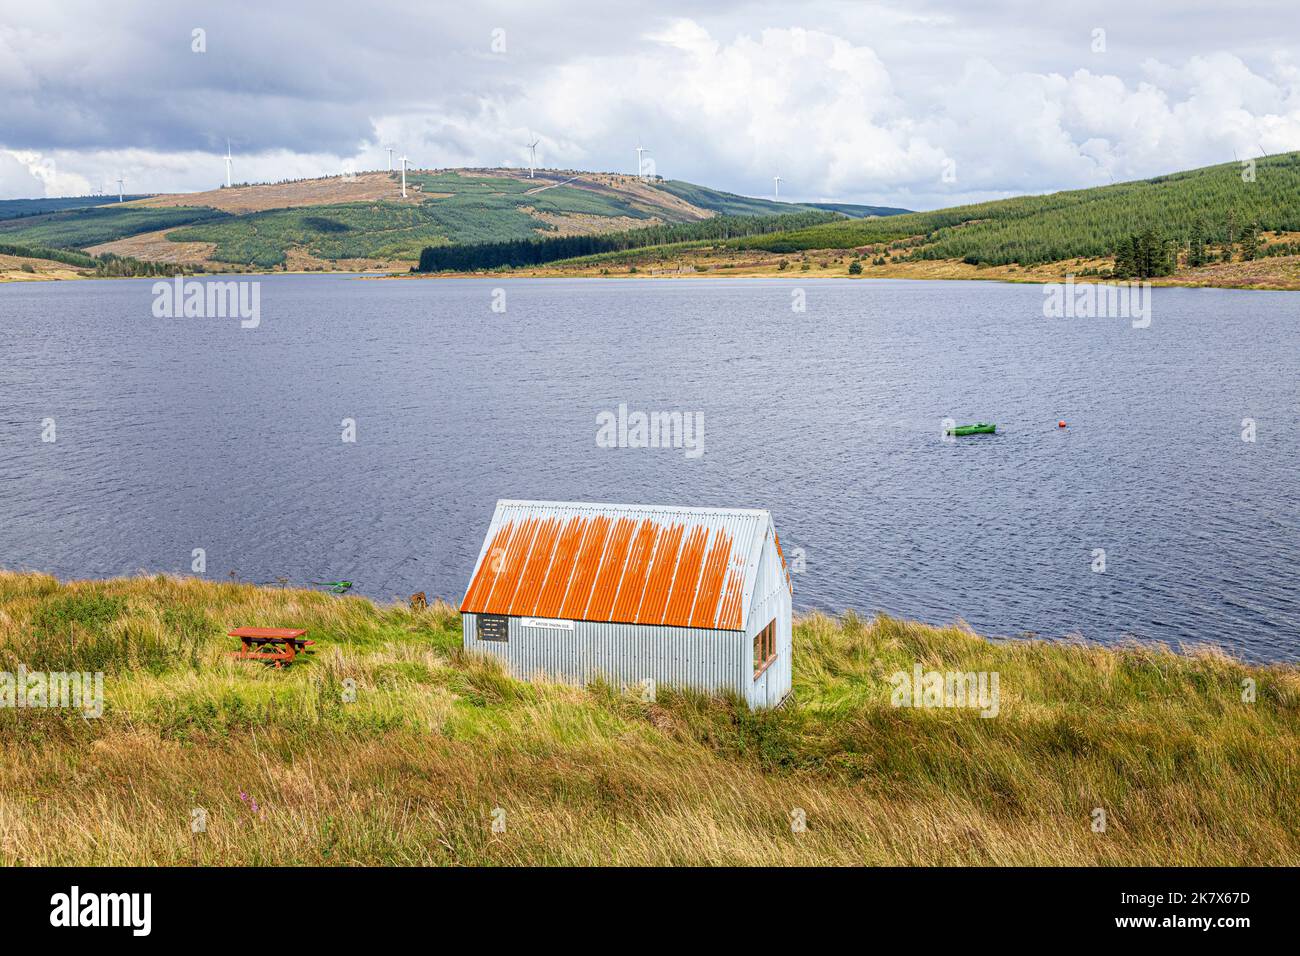 La cabaña pesquera del Kintyre Angling Club en Lussa Loch en la península de Kintyre, Argyll & Bute, Escocia, Reino Unido Foto de stock